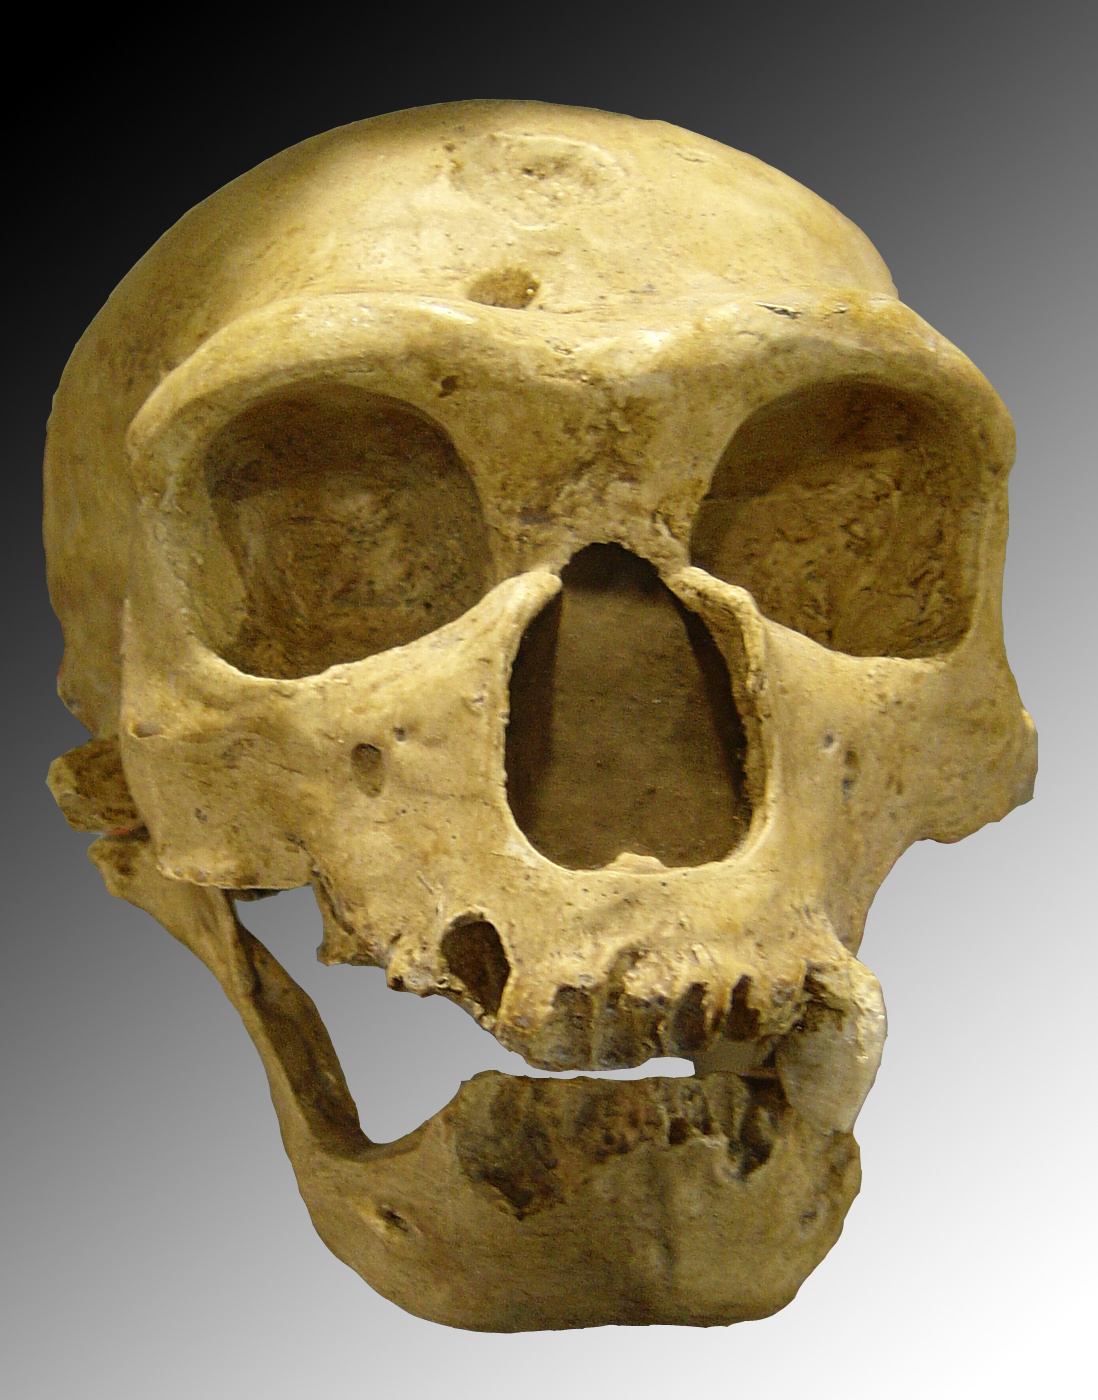 尼安德塔人頭骨，H. neanderthalensis，法國聖沙拜爾。Homo sapiens neanderthalensis 由 Luna04 - 來自 維基共享資源 - http://commons.wikimedia.org/wiki/File:Homo_sapiens_neanderthalensis.jpg#mediaviewer/File:Homo_sapiens_neanderthalensis.jpg